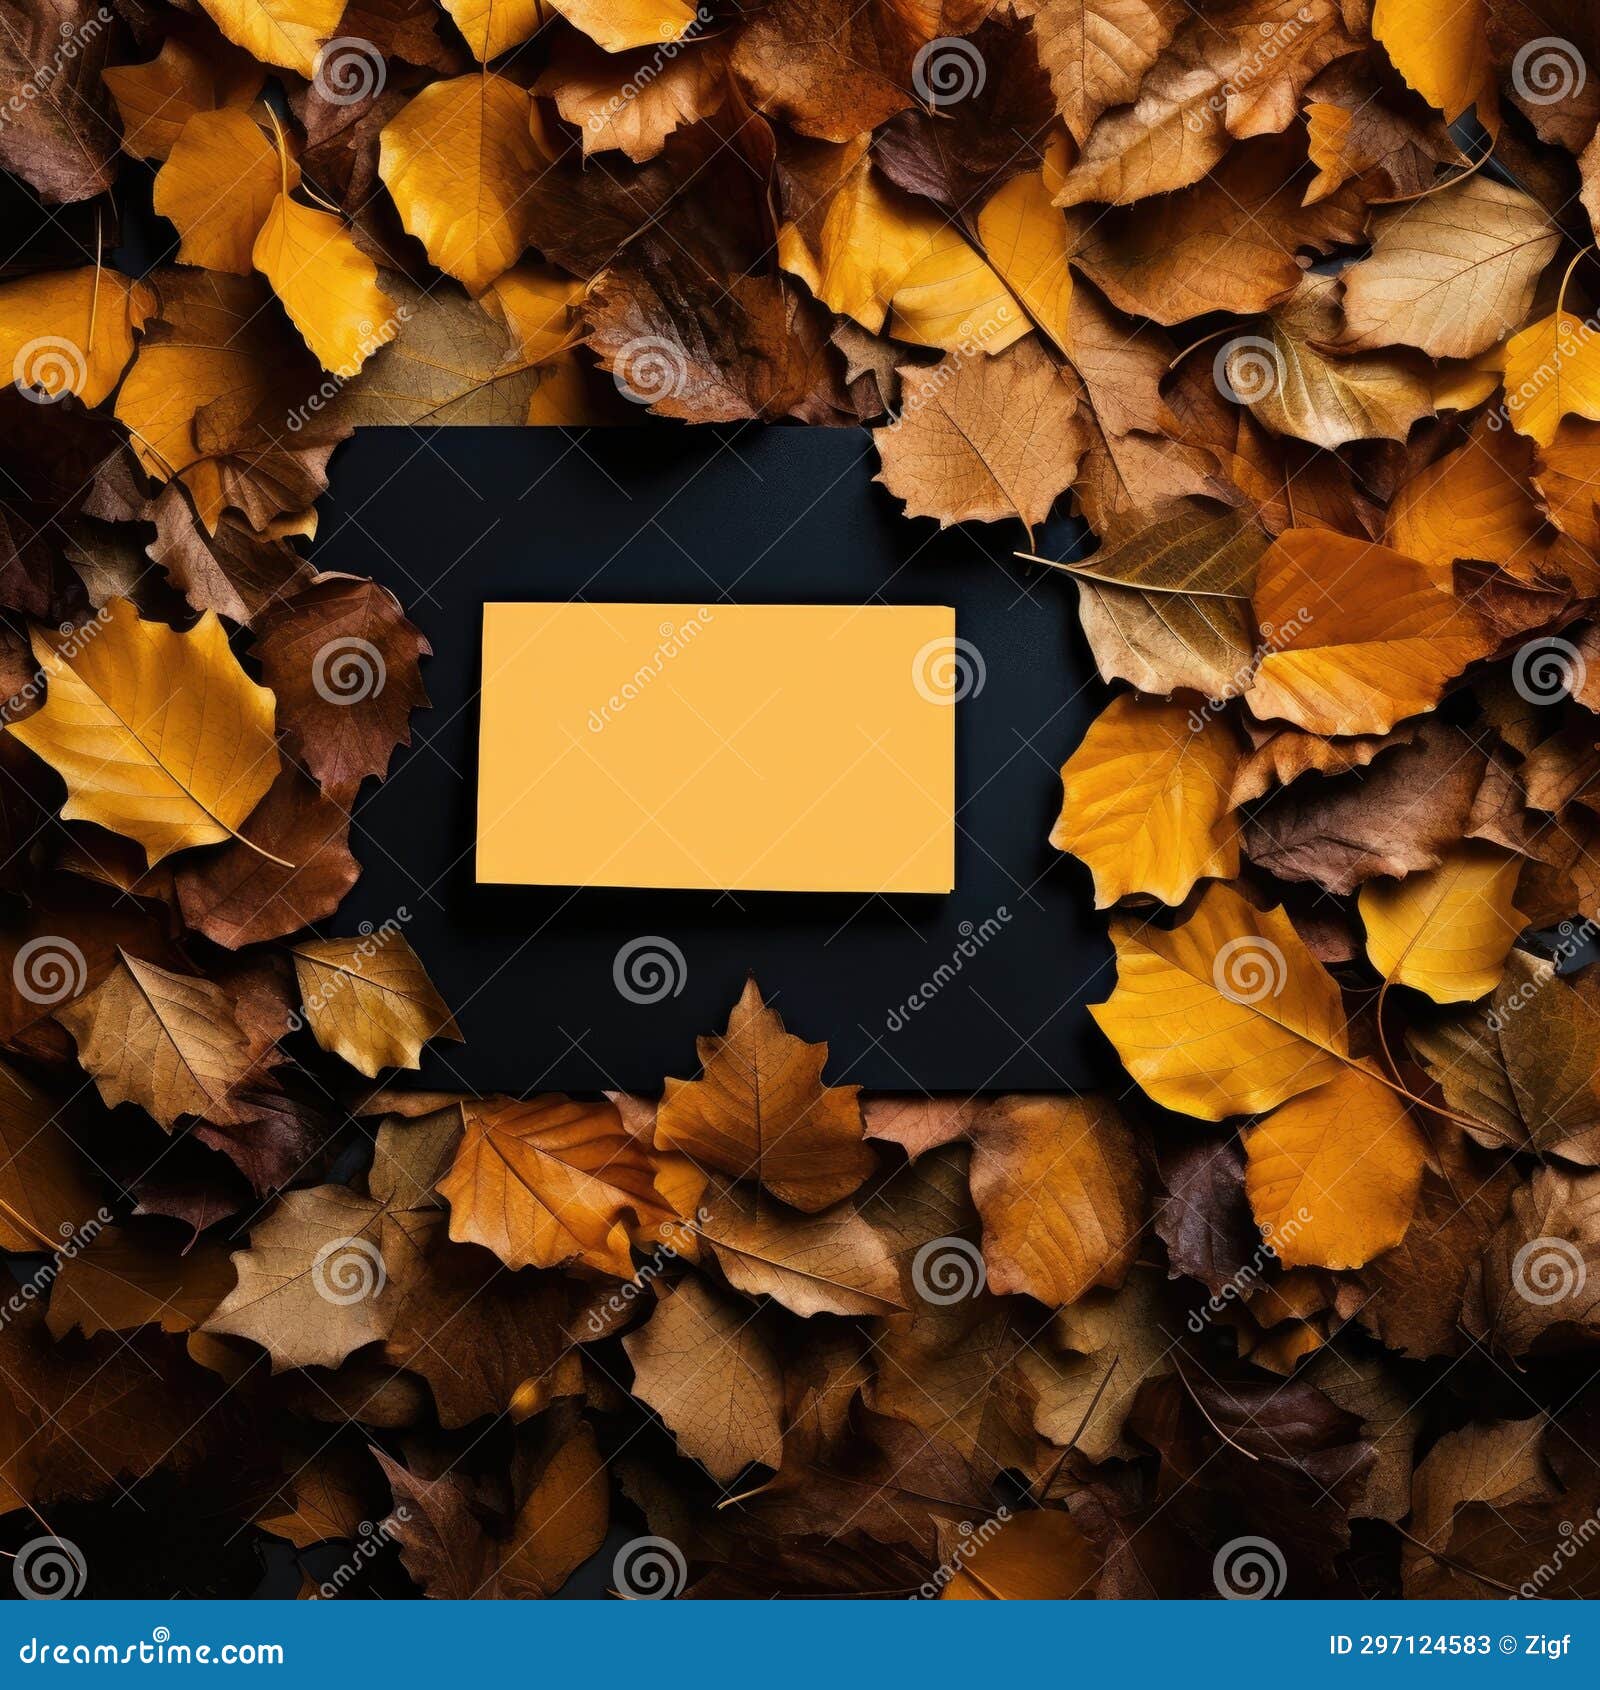 yellow card surrounded by autumn leaves on a black background stock fotos e imagens de alta calidad en el mercado libre para usar